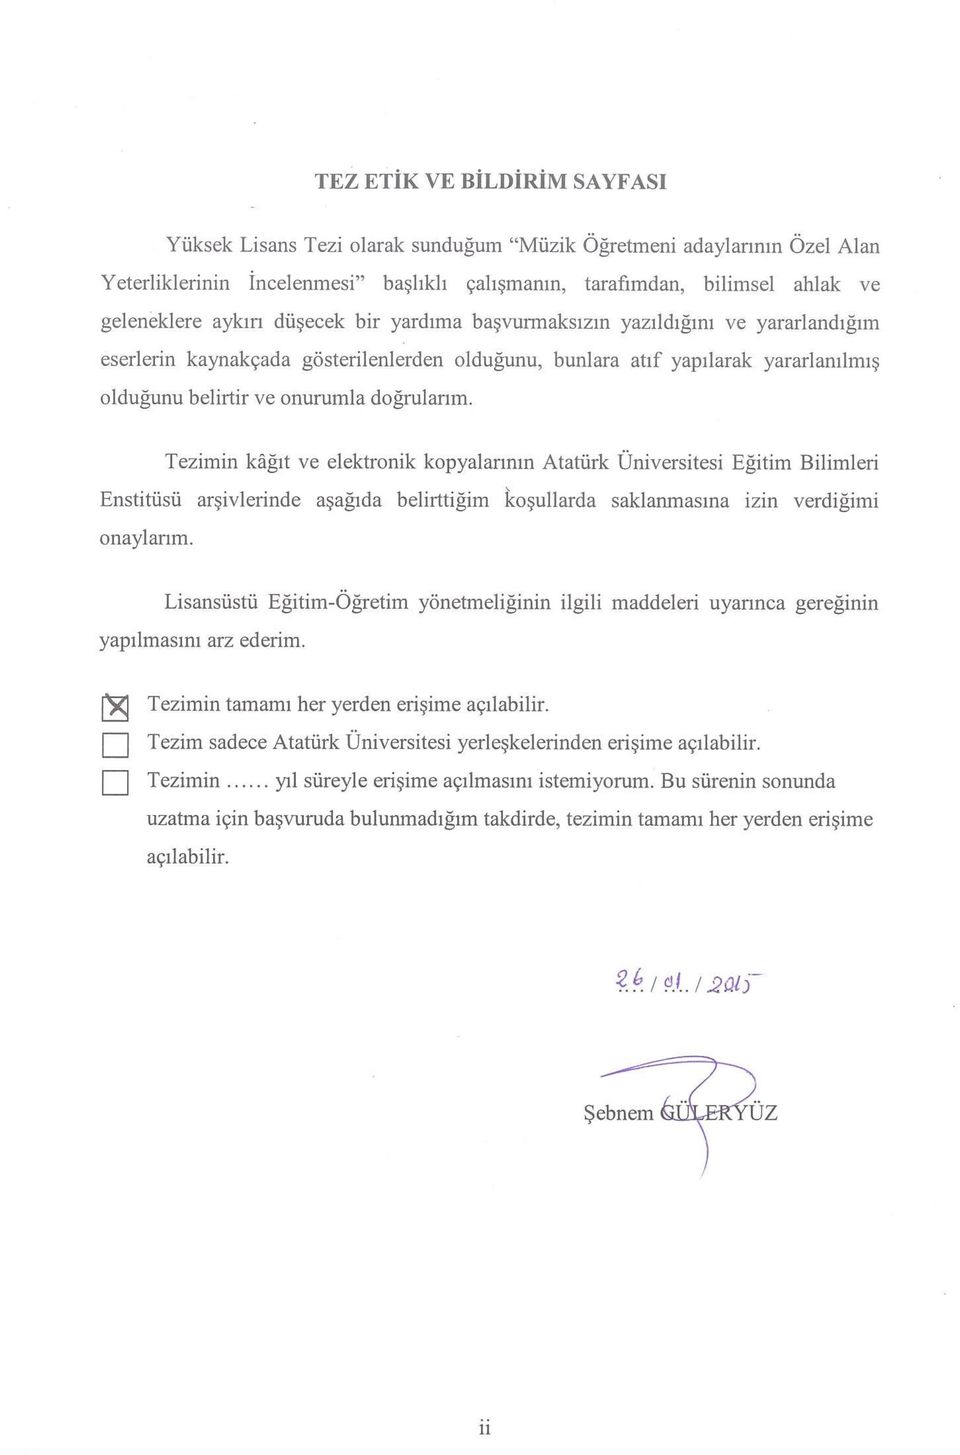 Tezimin kâğıt ve elektronik kopyalarının Atatürk Üniversitesi Eğitim Bilimleri Enstitüsü arşivlerinde aşağıda belirttiğim koşullarda saklanmasına izin verdiğimi onaylarım.